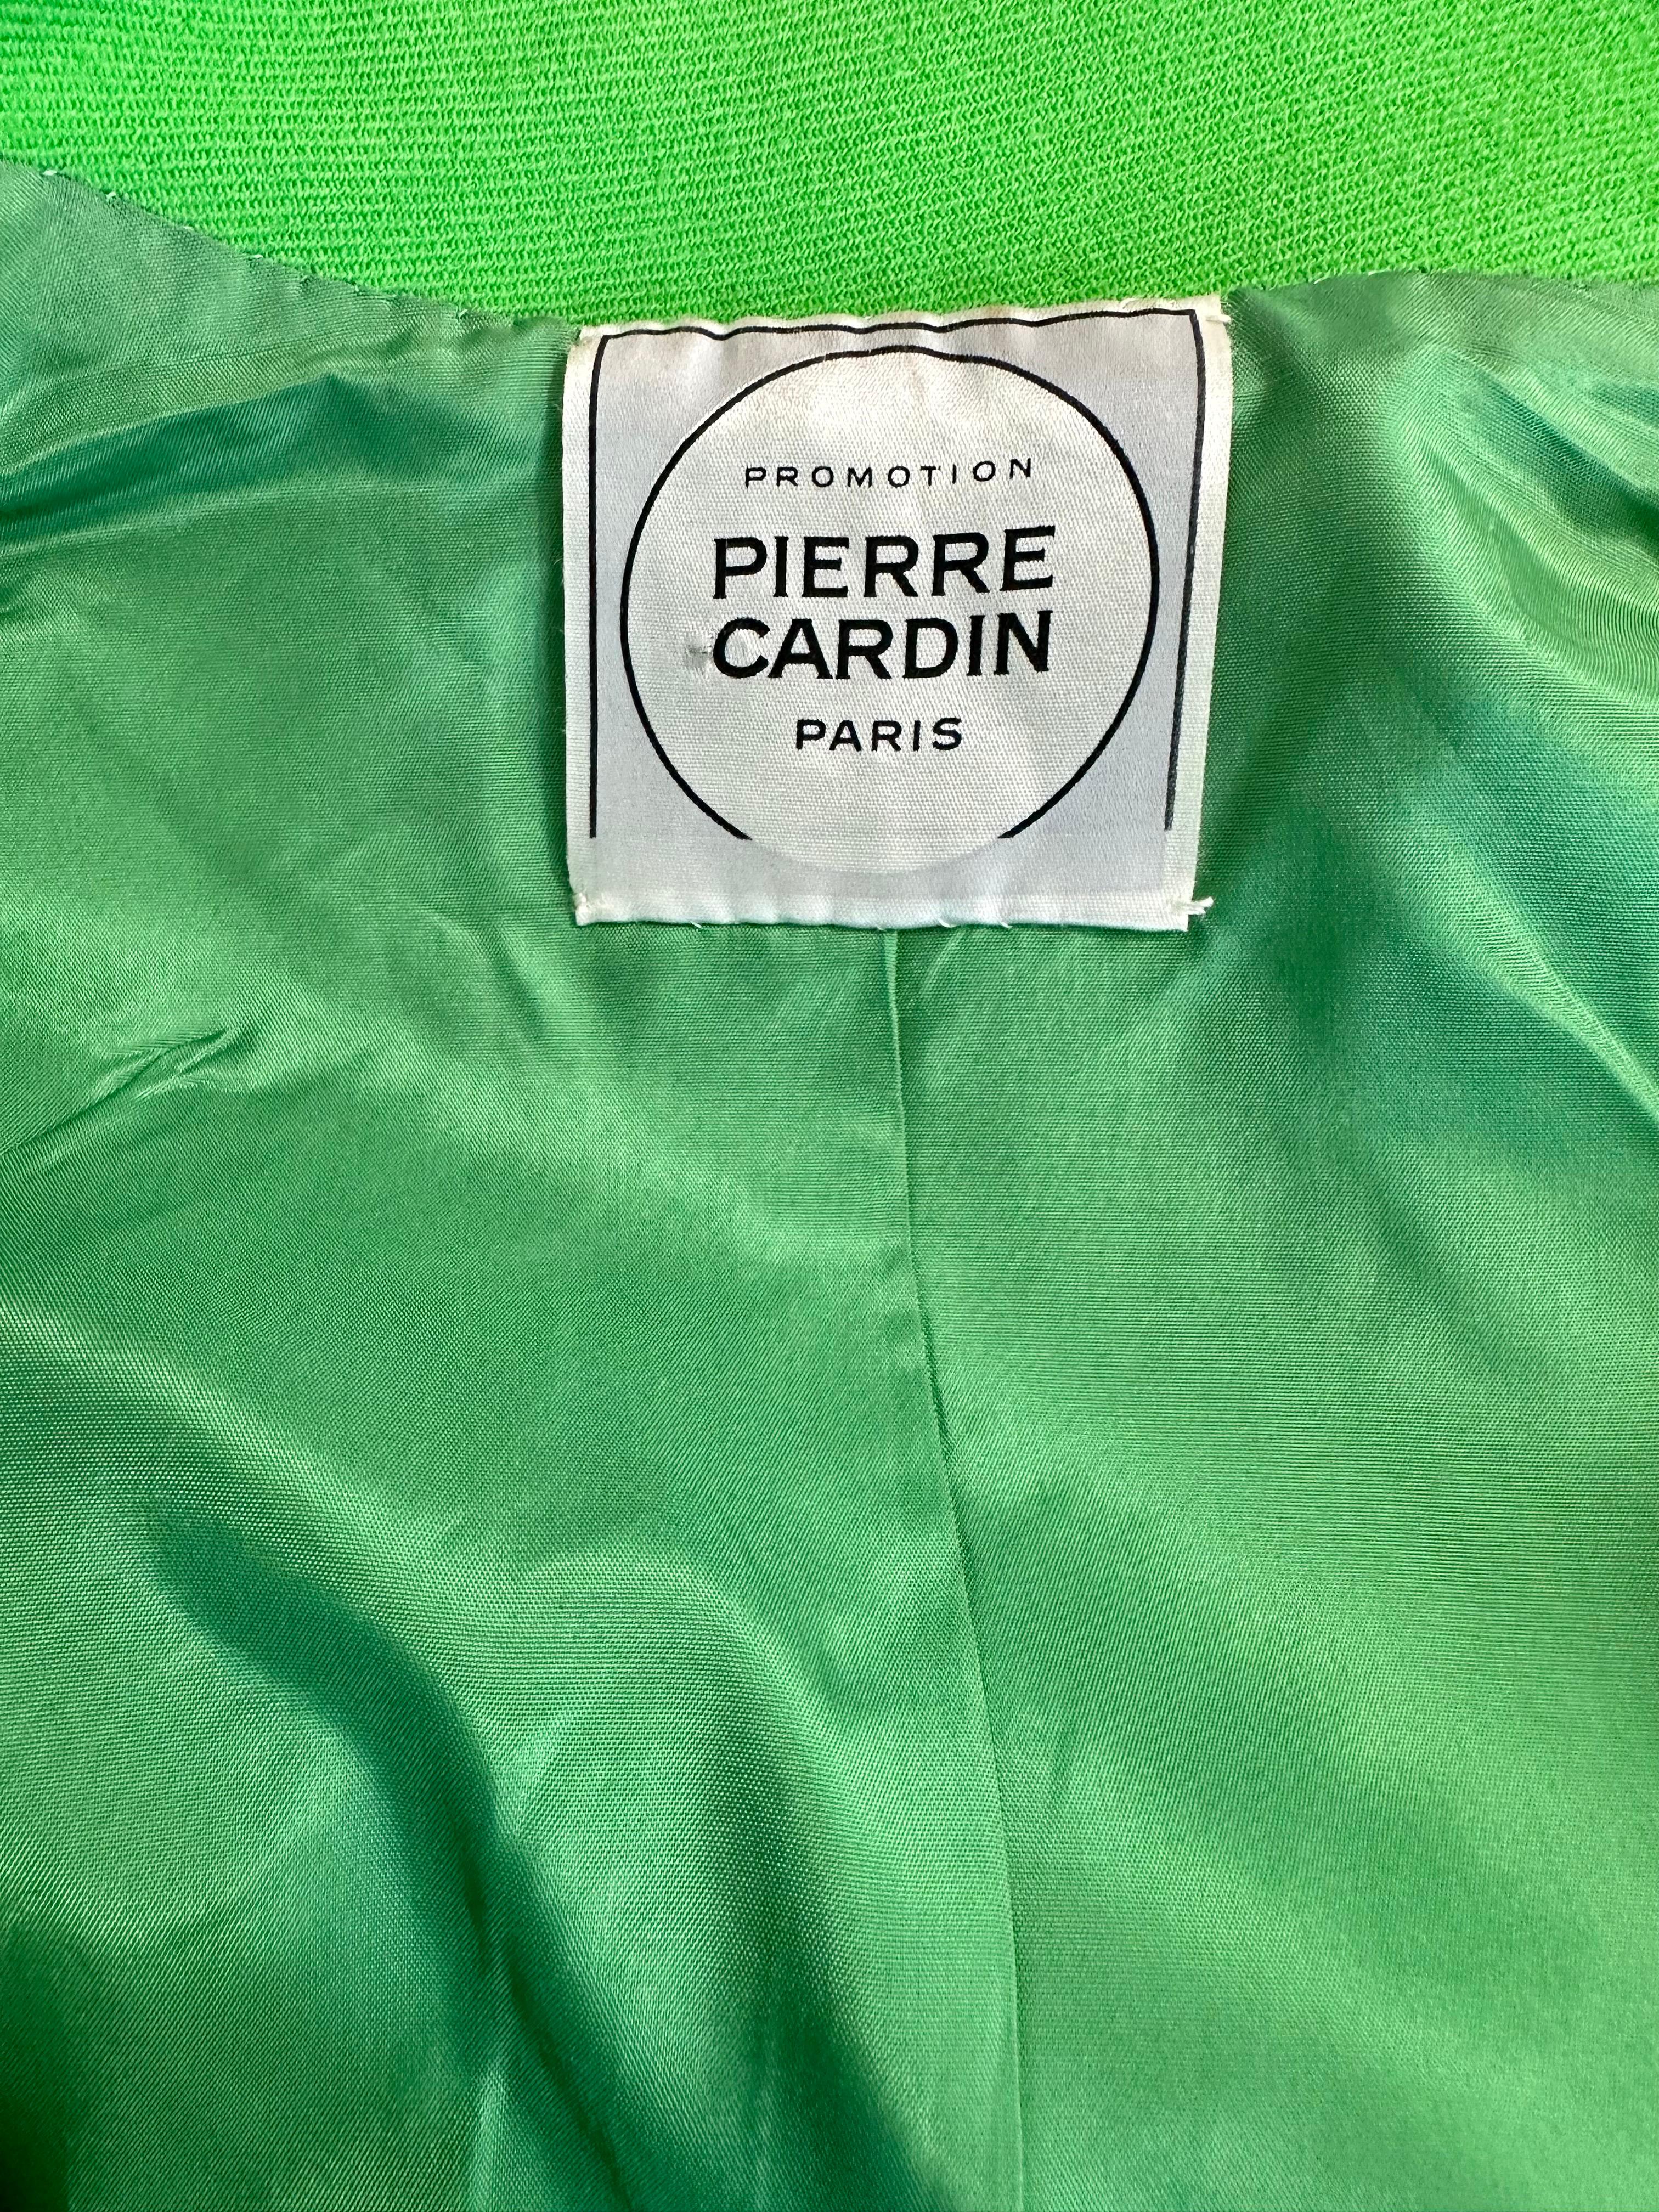 Pierre Cardin Promotion 1970s green wool jacket For Sale 7